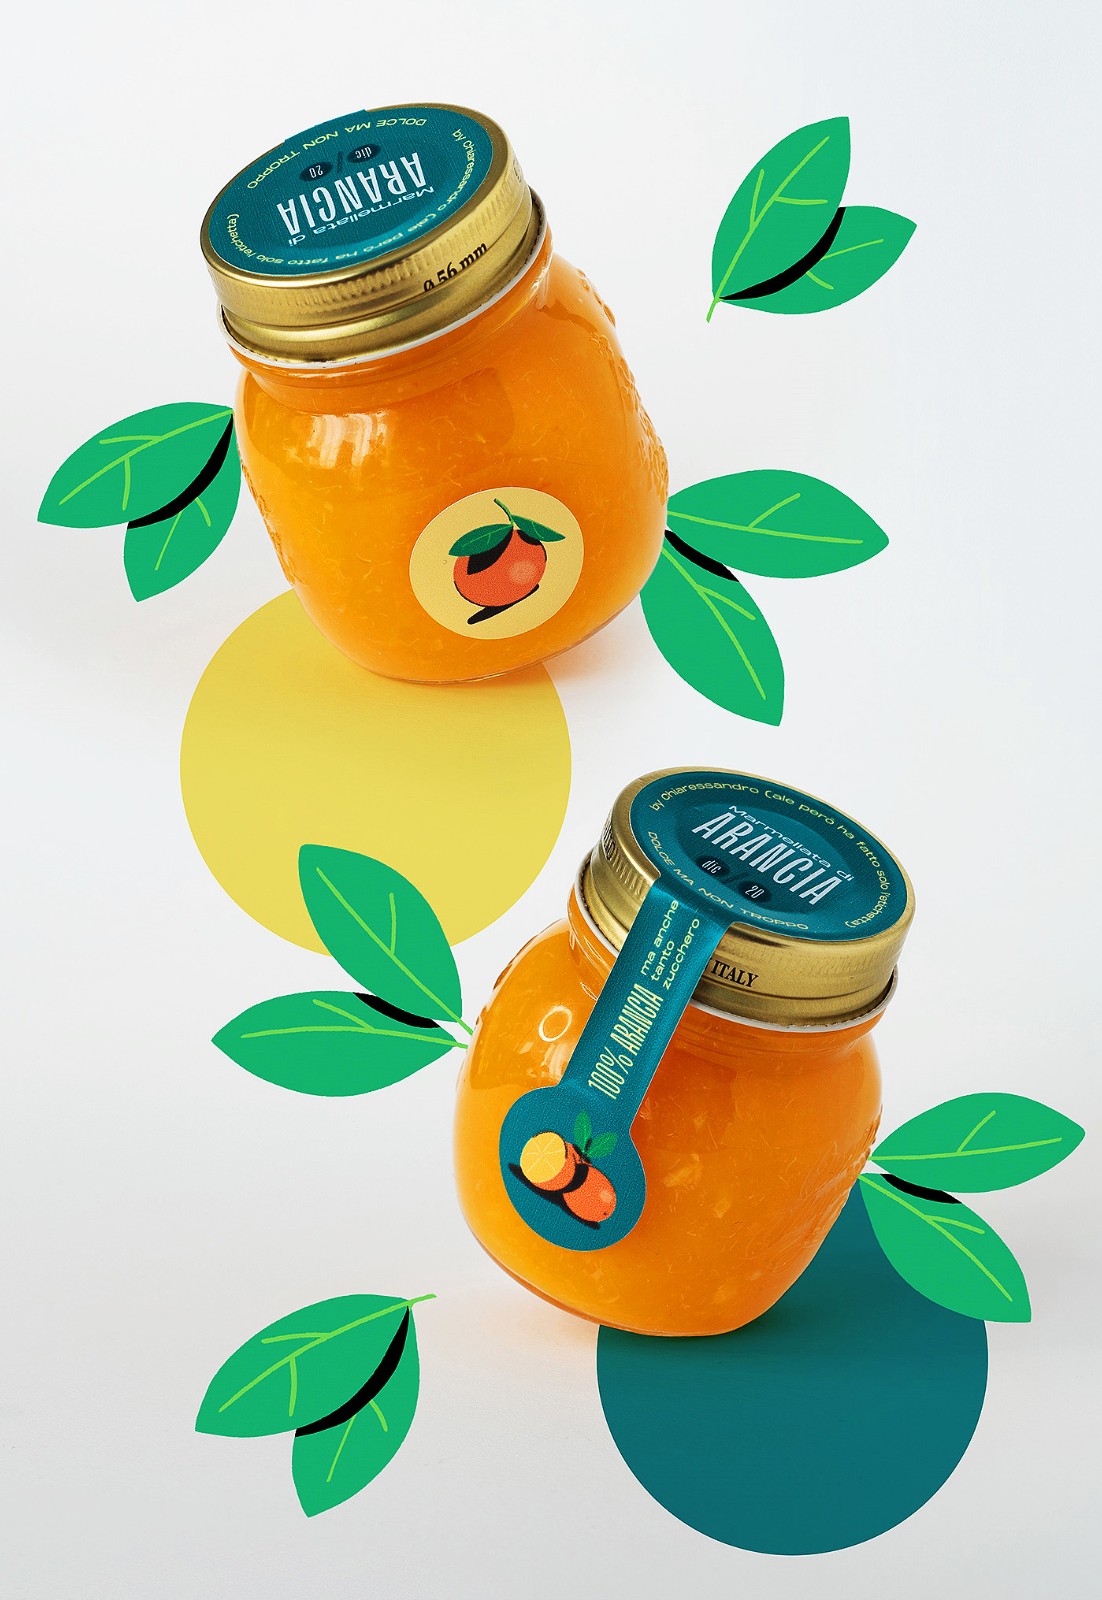 橘子果酱瓶型设计作品鉴赏 